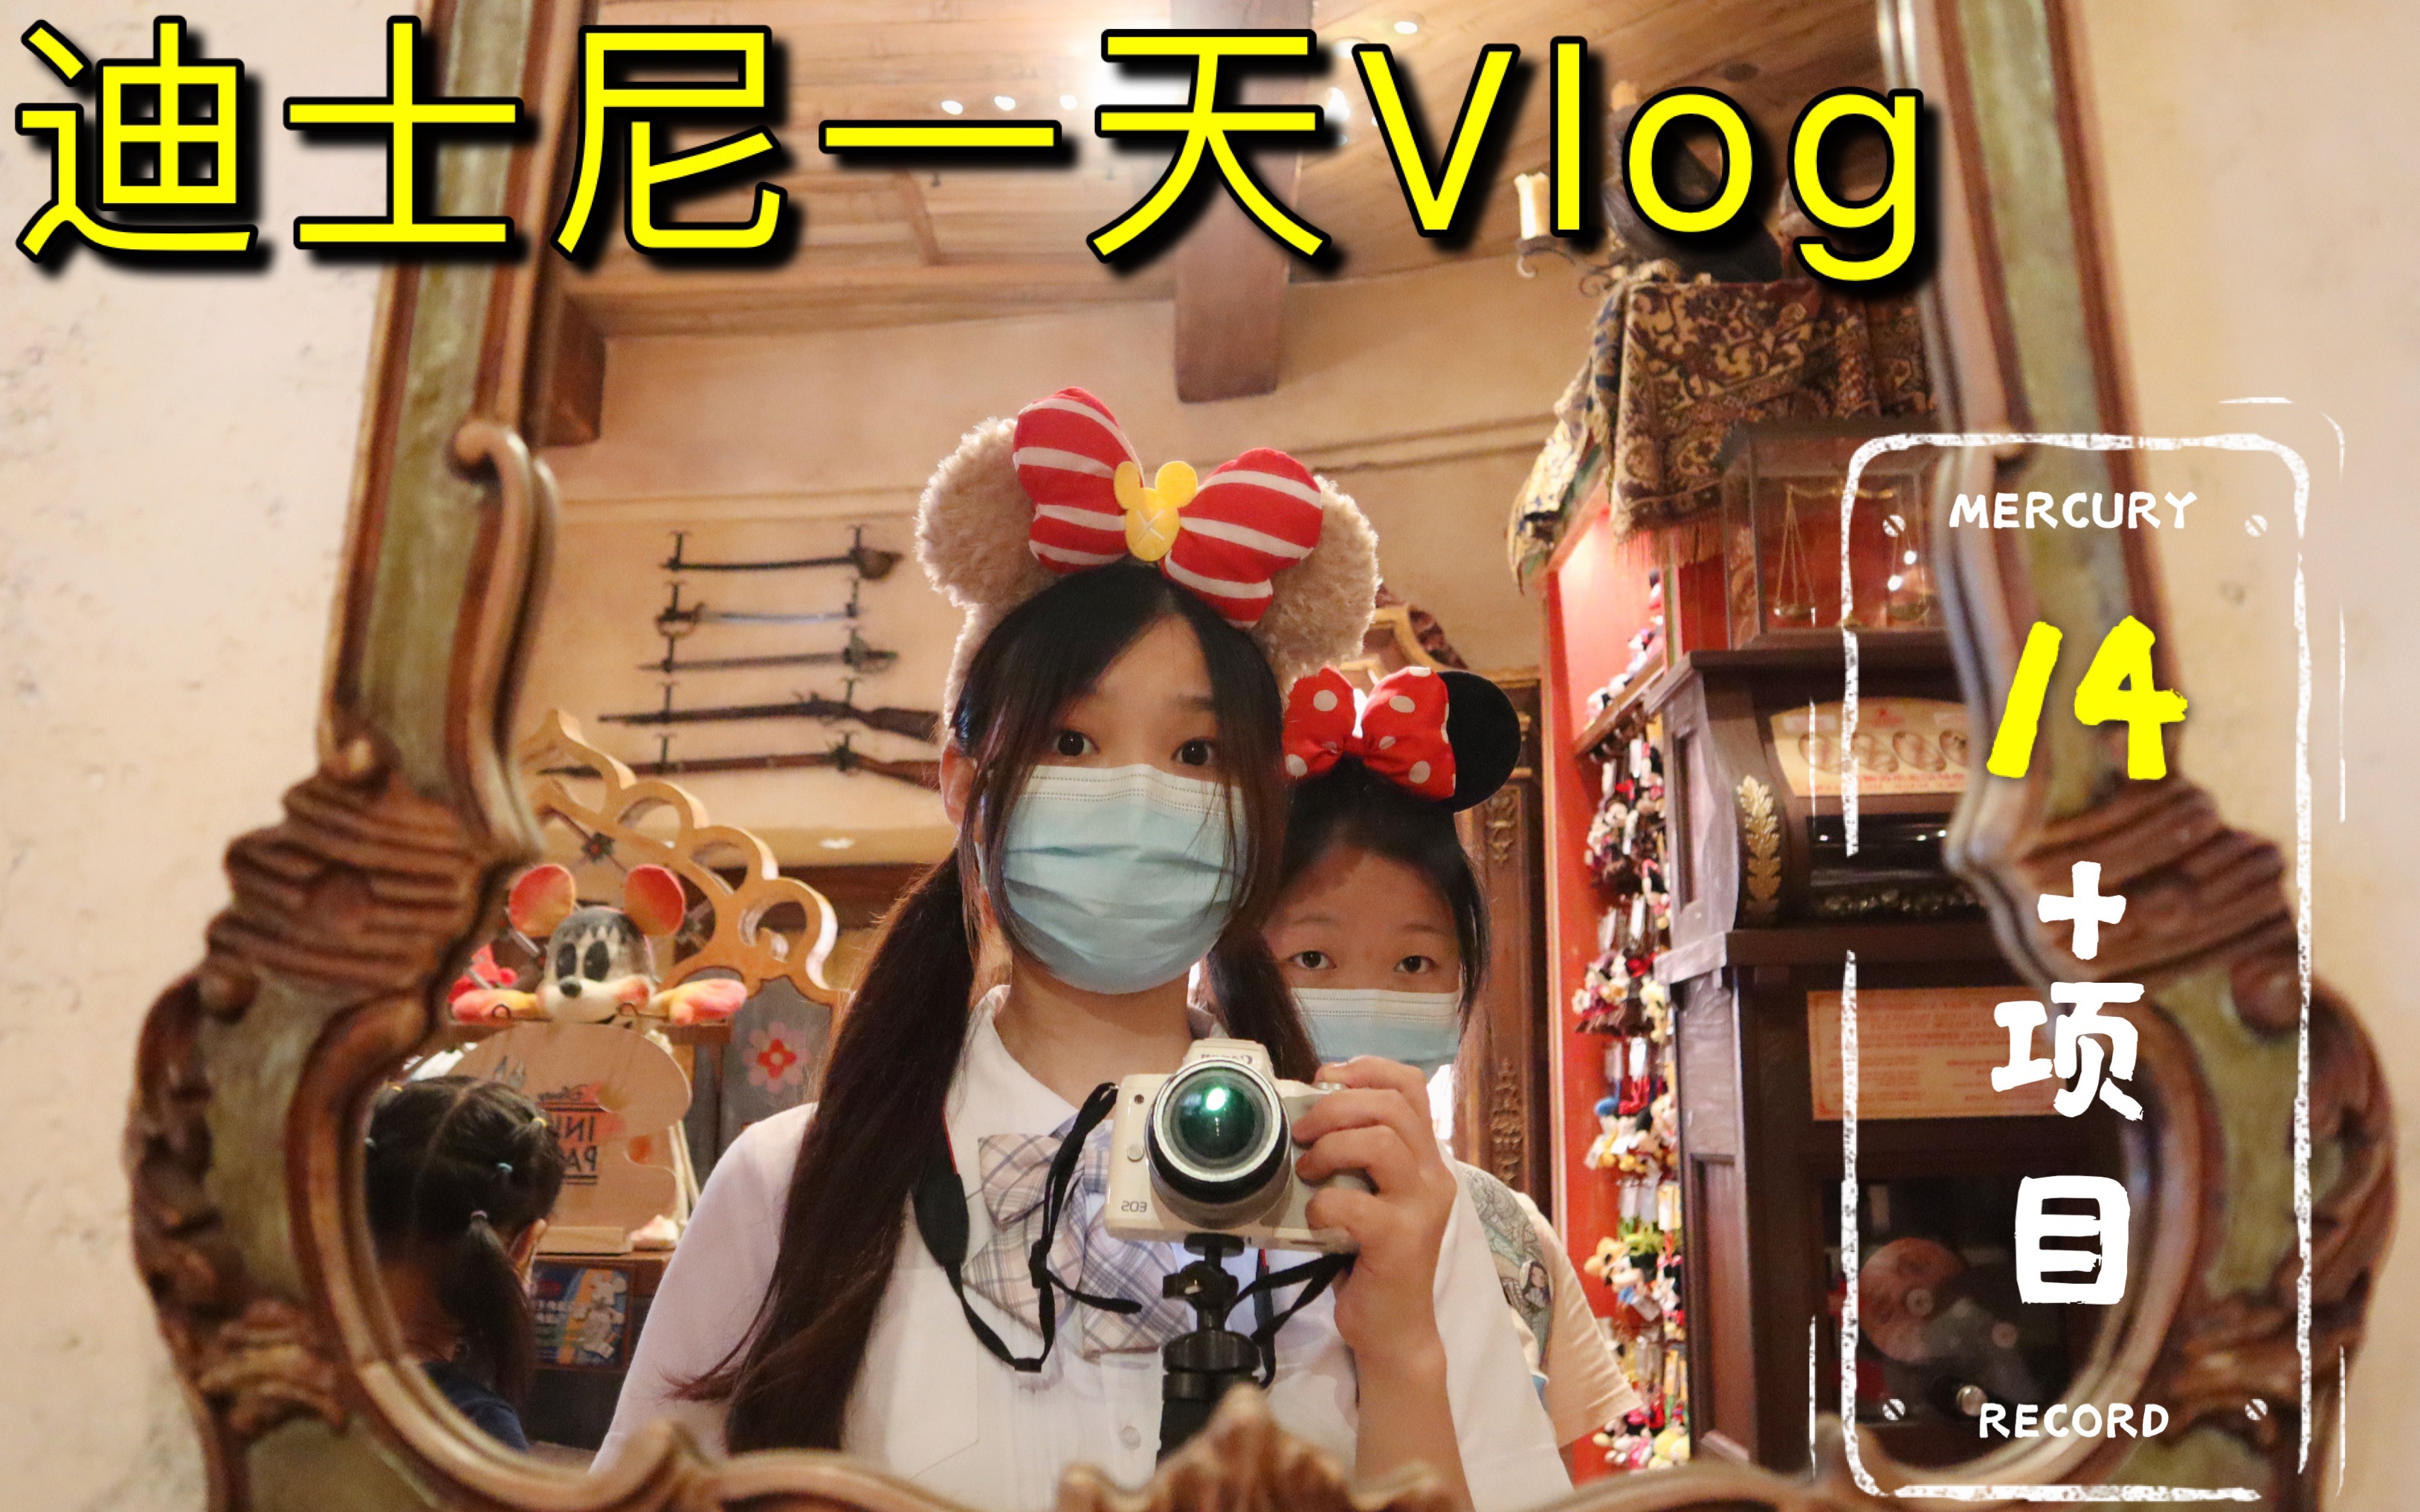 上海迪士尼vlog｜一天玩遍上海迪士尼乐园14个项目vlog记录｜攻略